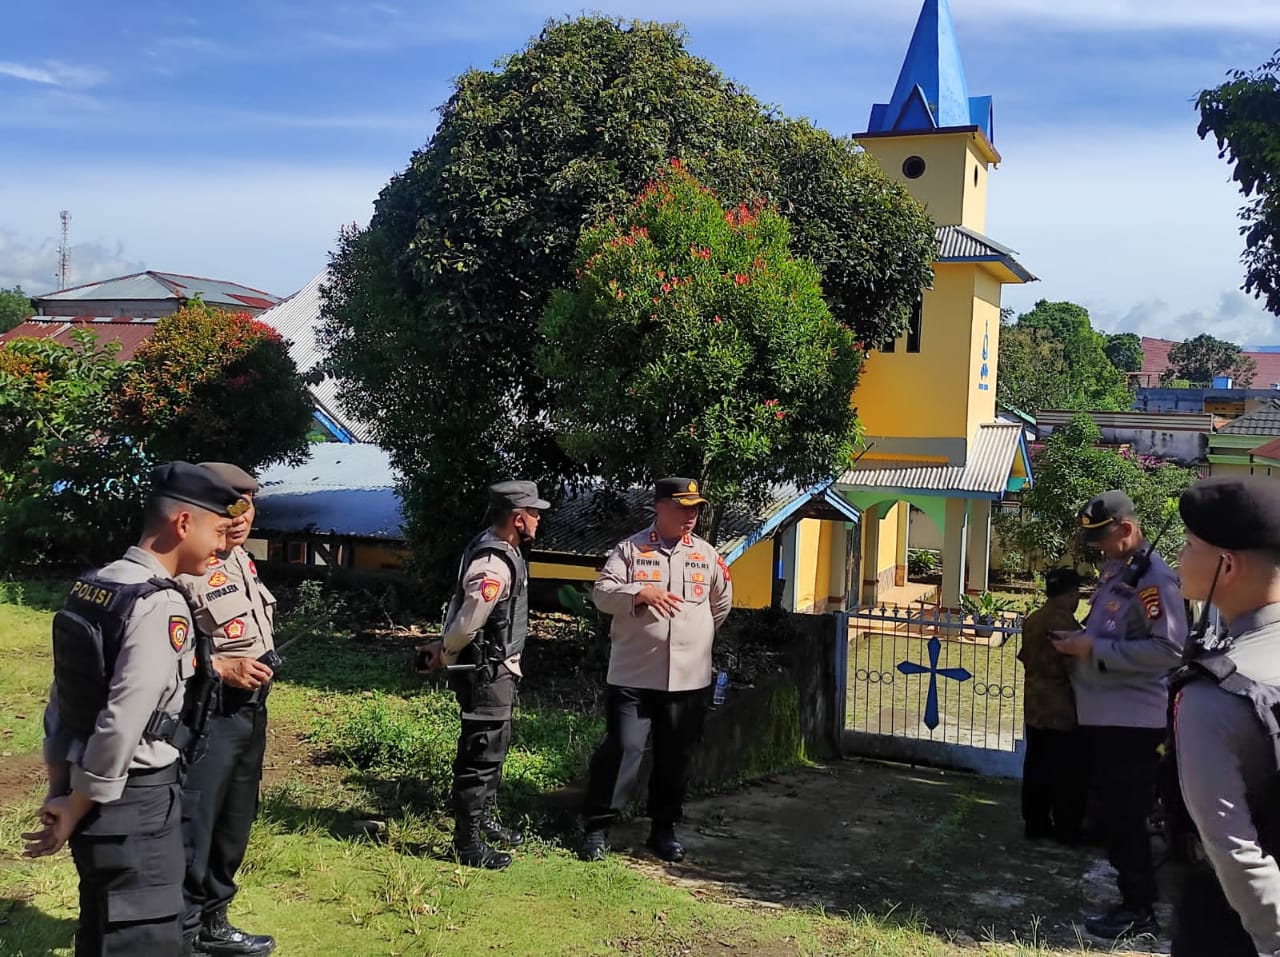 Gereja Santo Mikael di Tanjung Sakti, Saksi Bisu Perkembangan Agama Katolik di Sumatera Selatan!